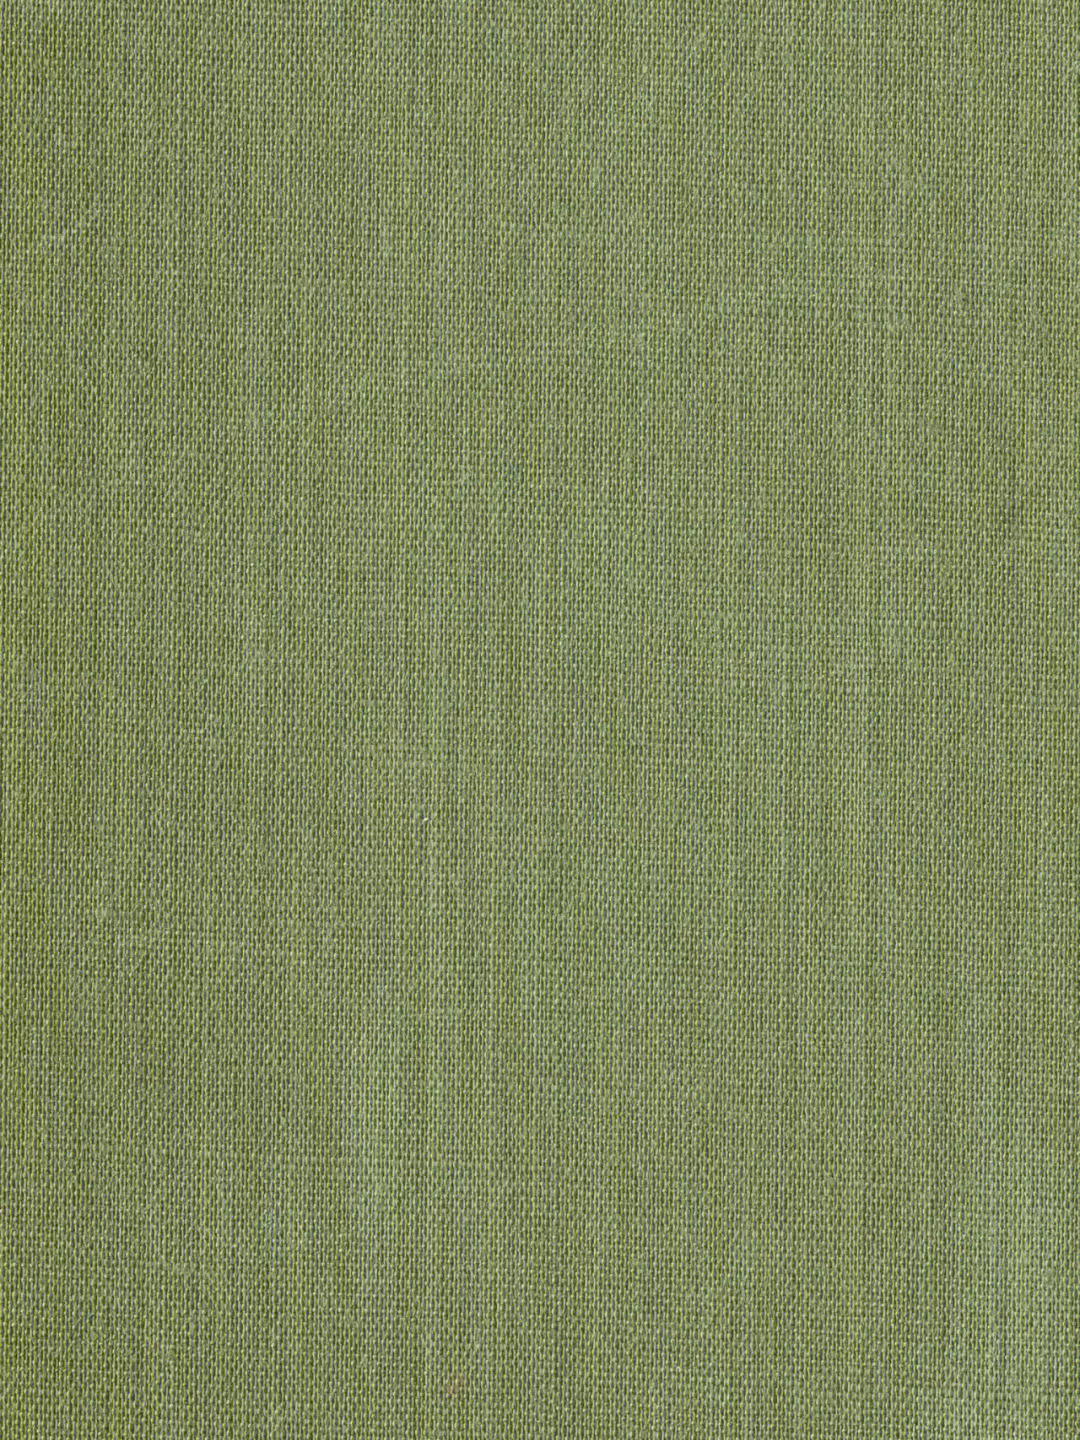 豆沙绿手机壁纸图片